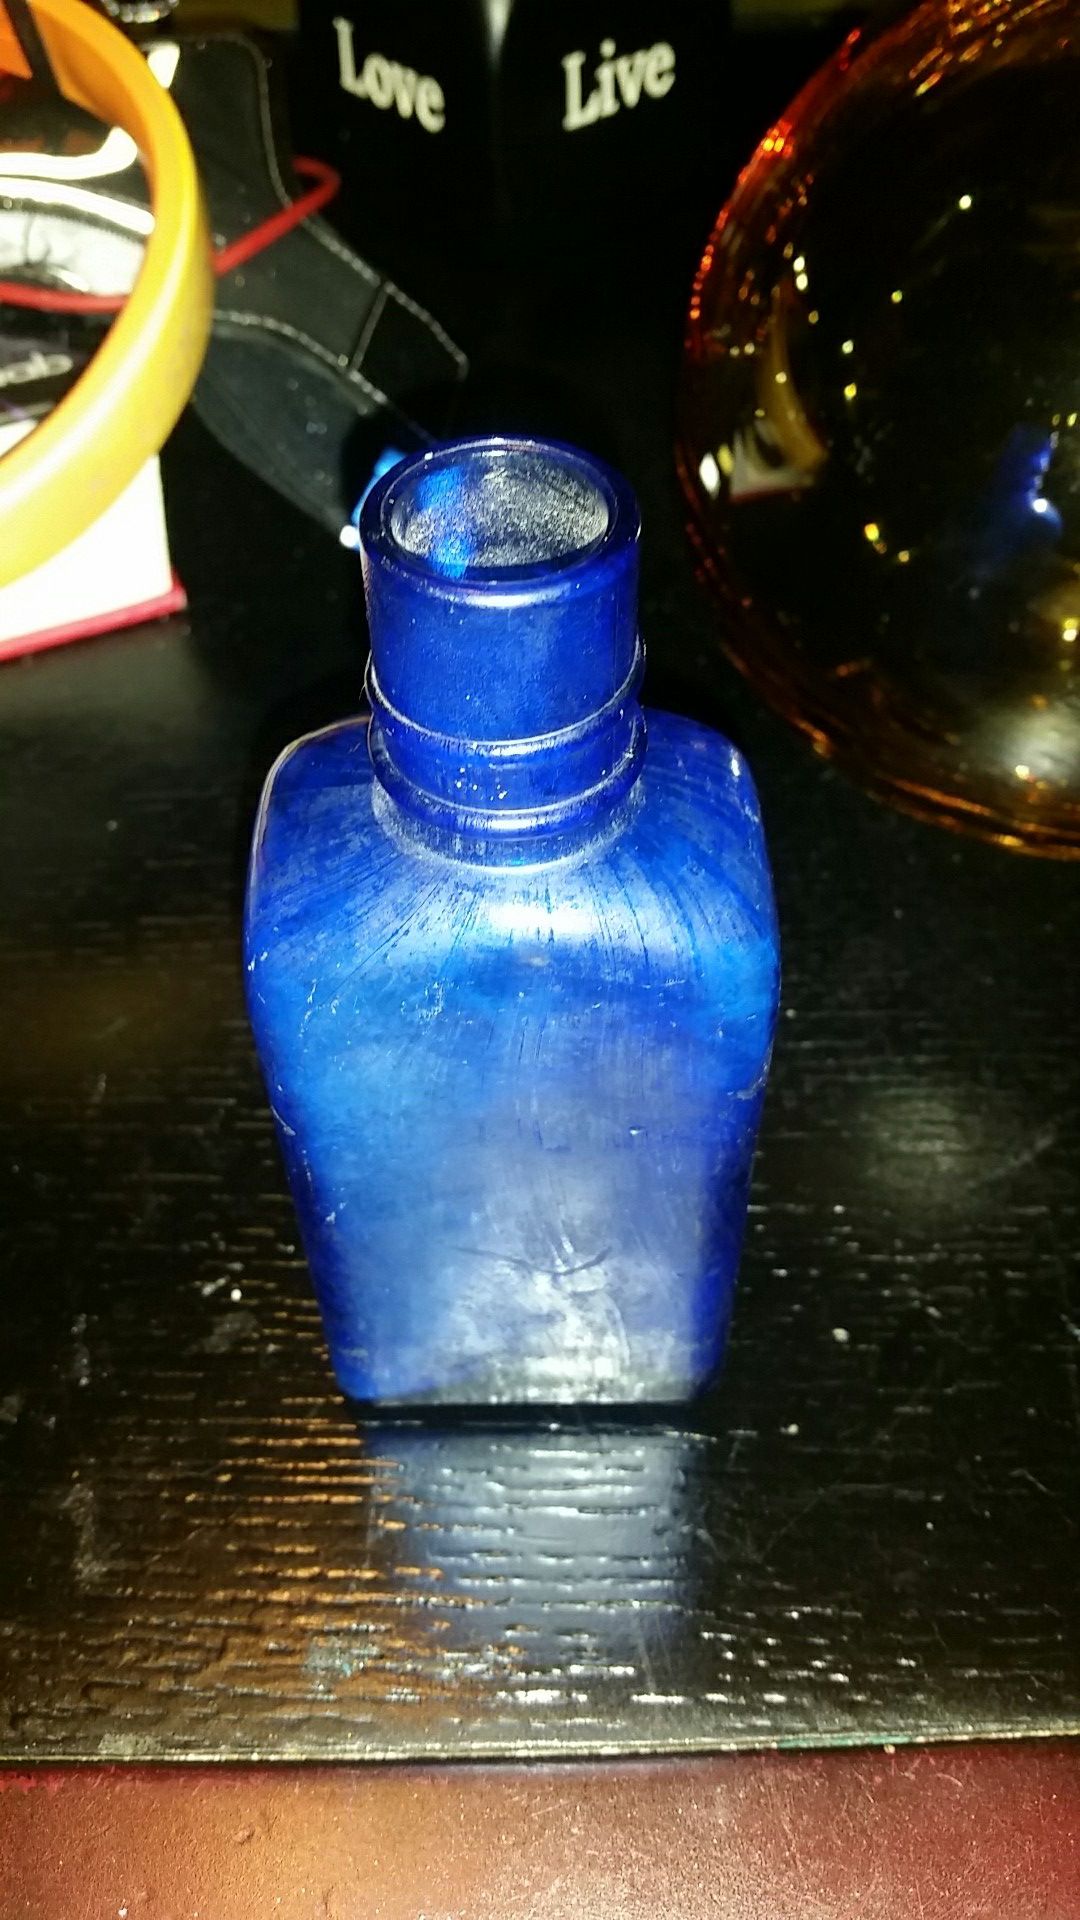 Antique poison bottle